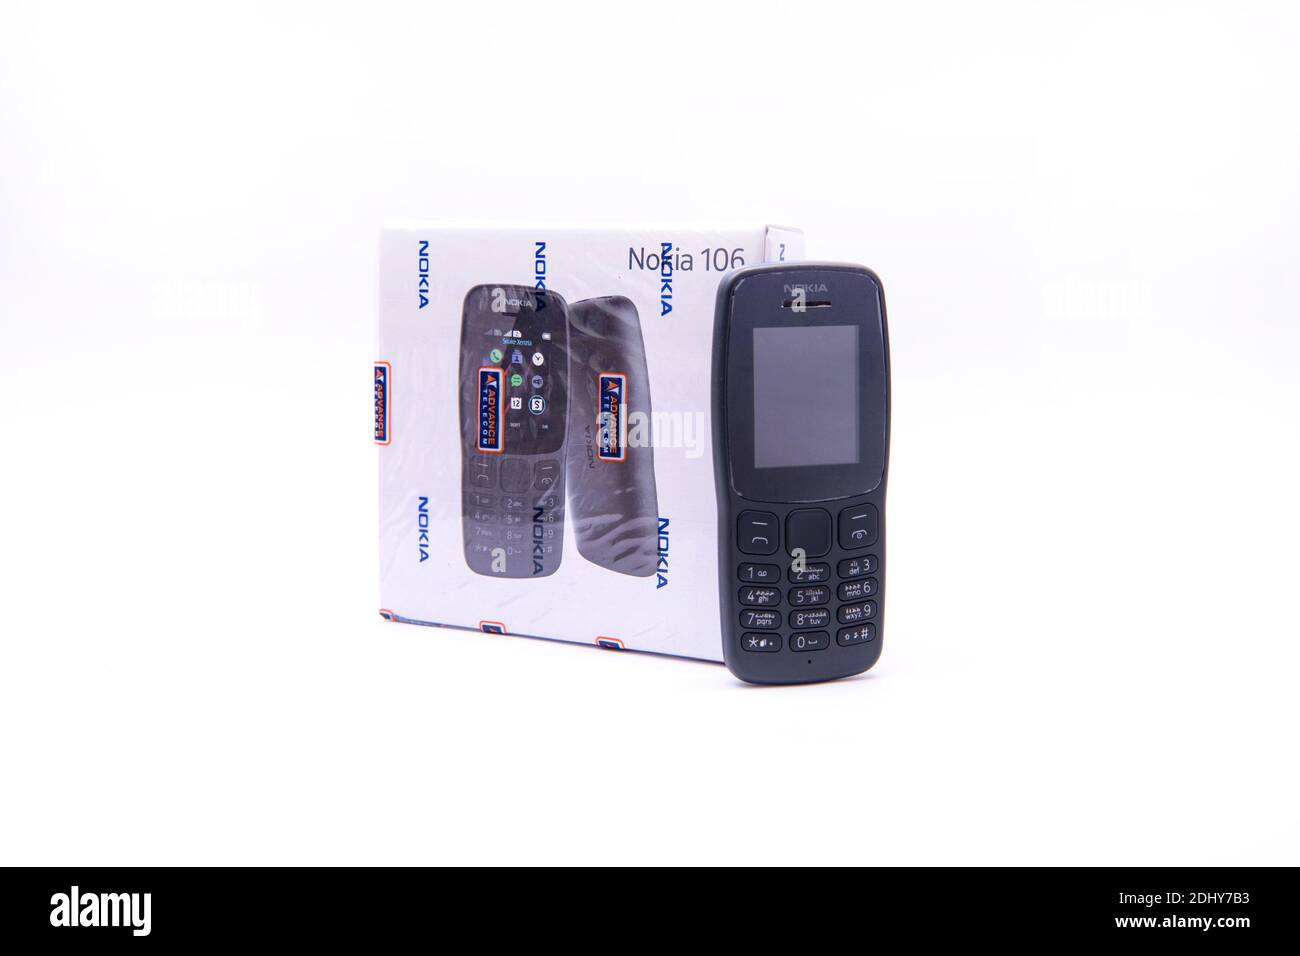 Nokia 105 Mobile sealed box Stock Photo